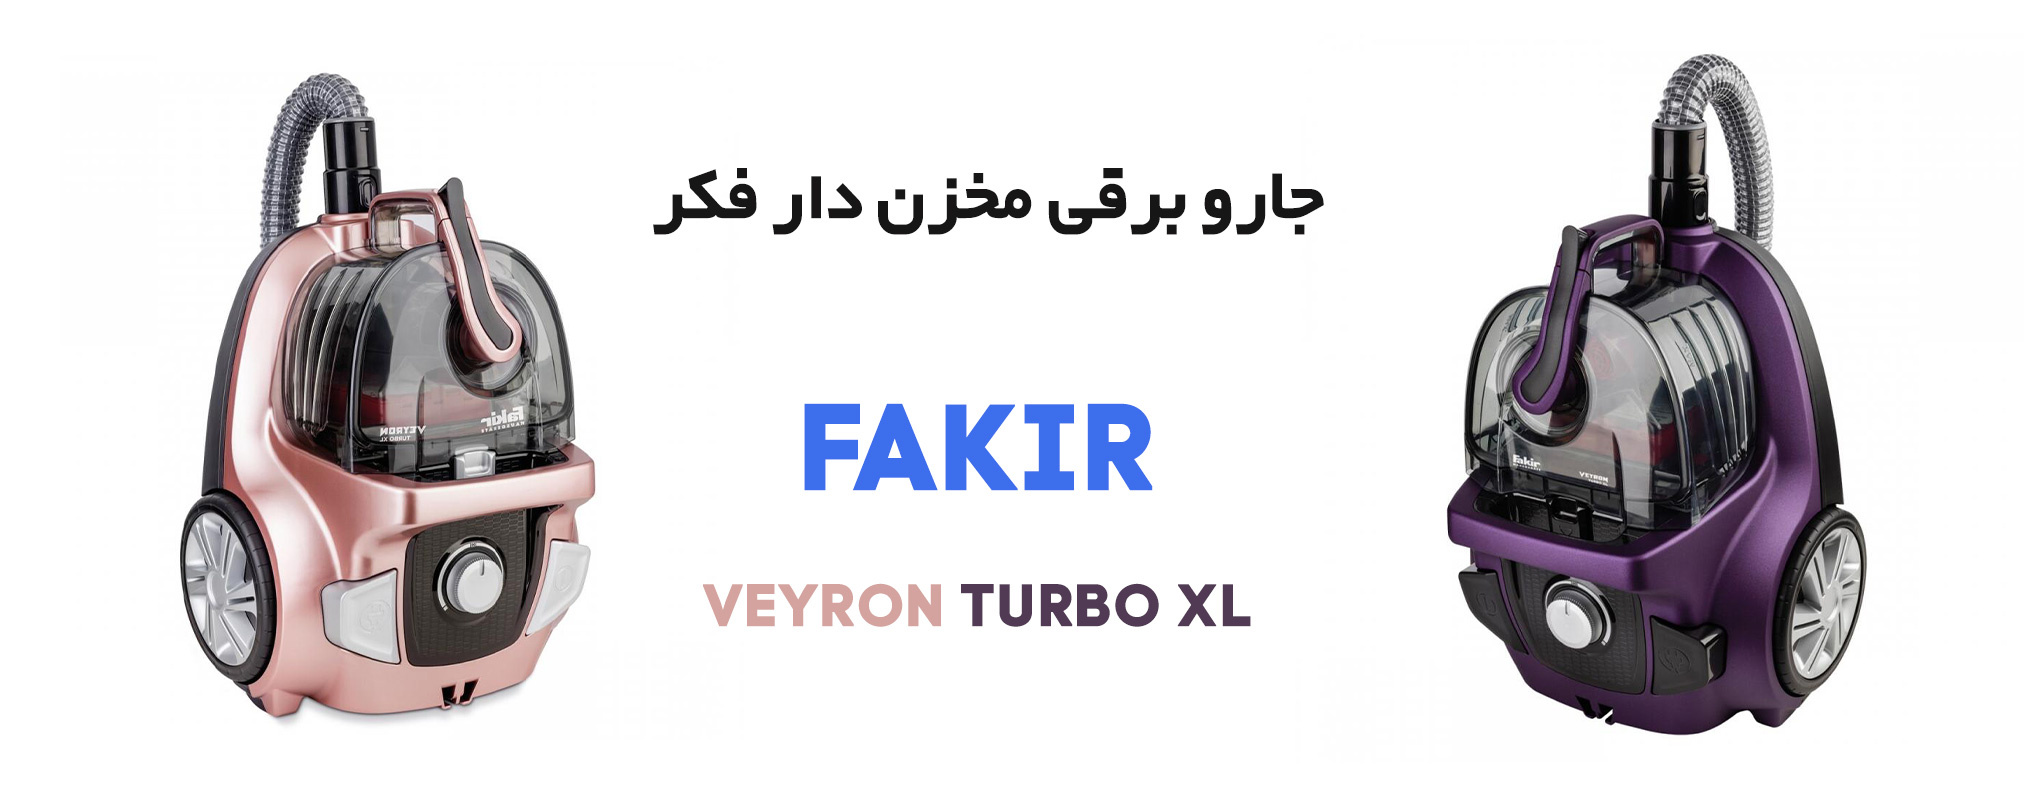 جاروبرقی مخزن دار فکر مدل VEYRON TURBO XL